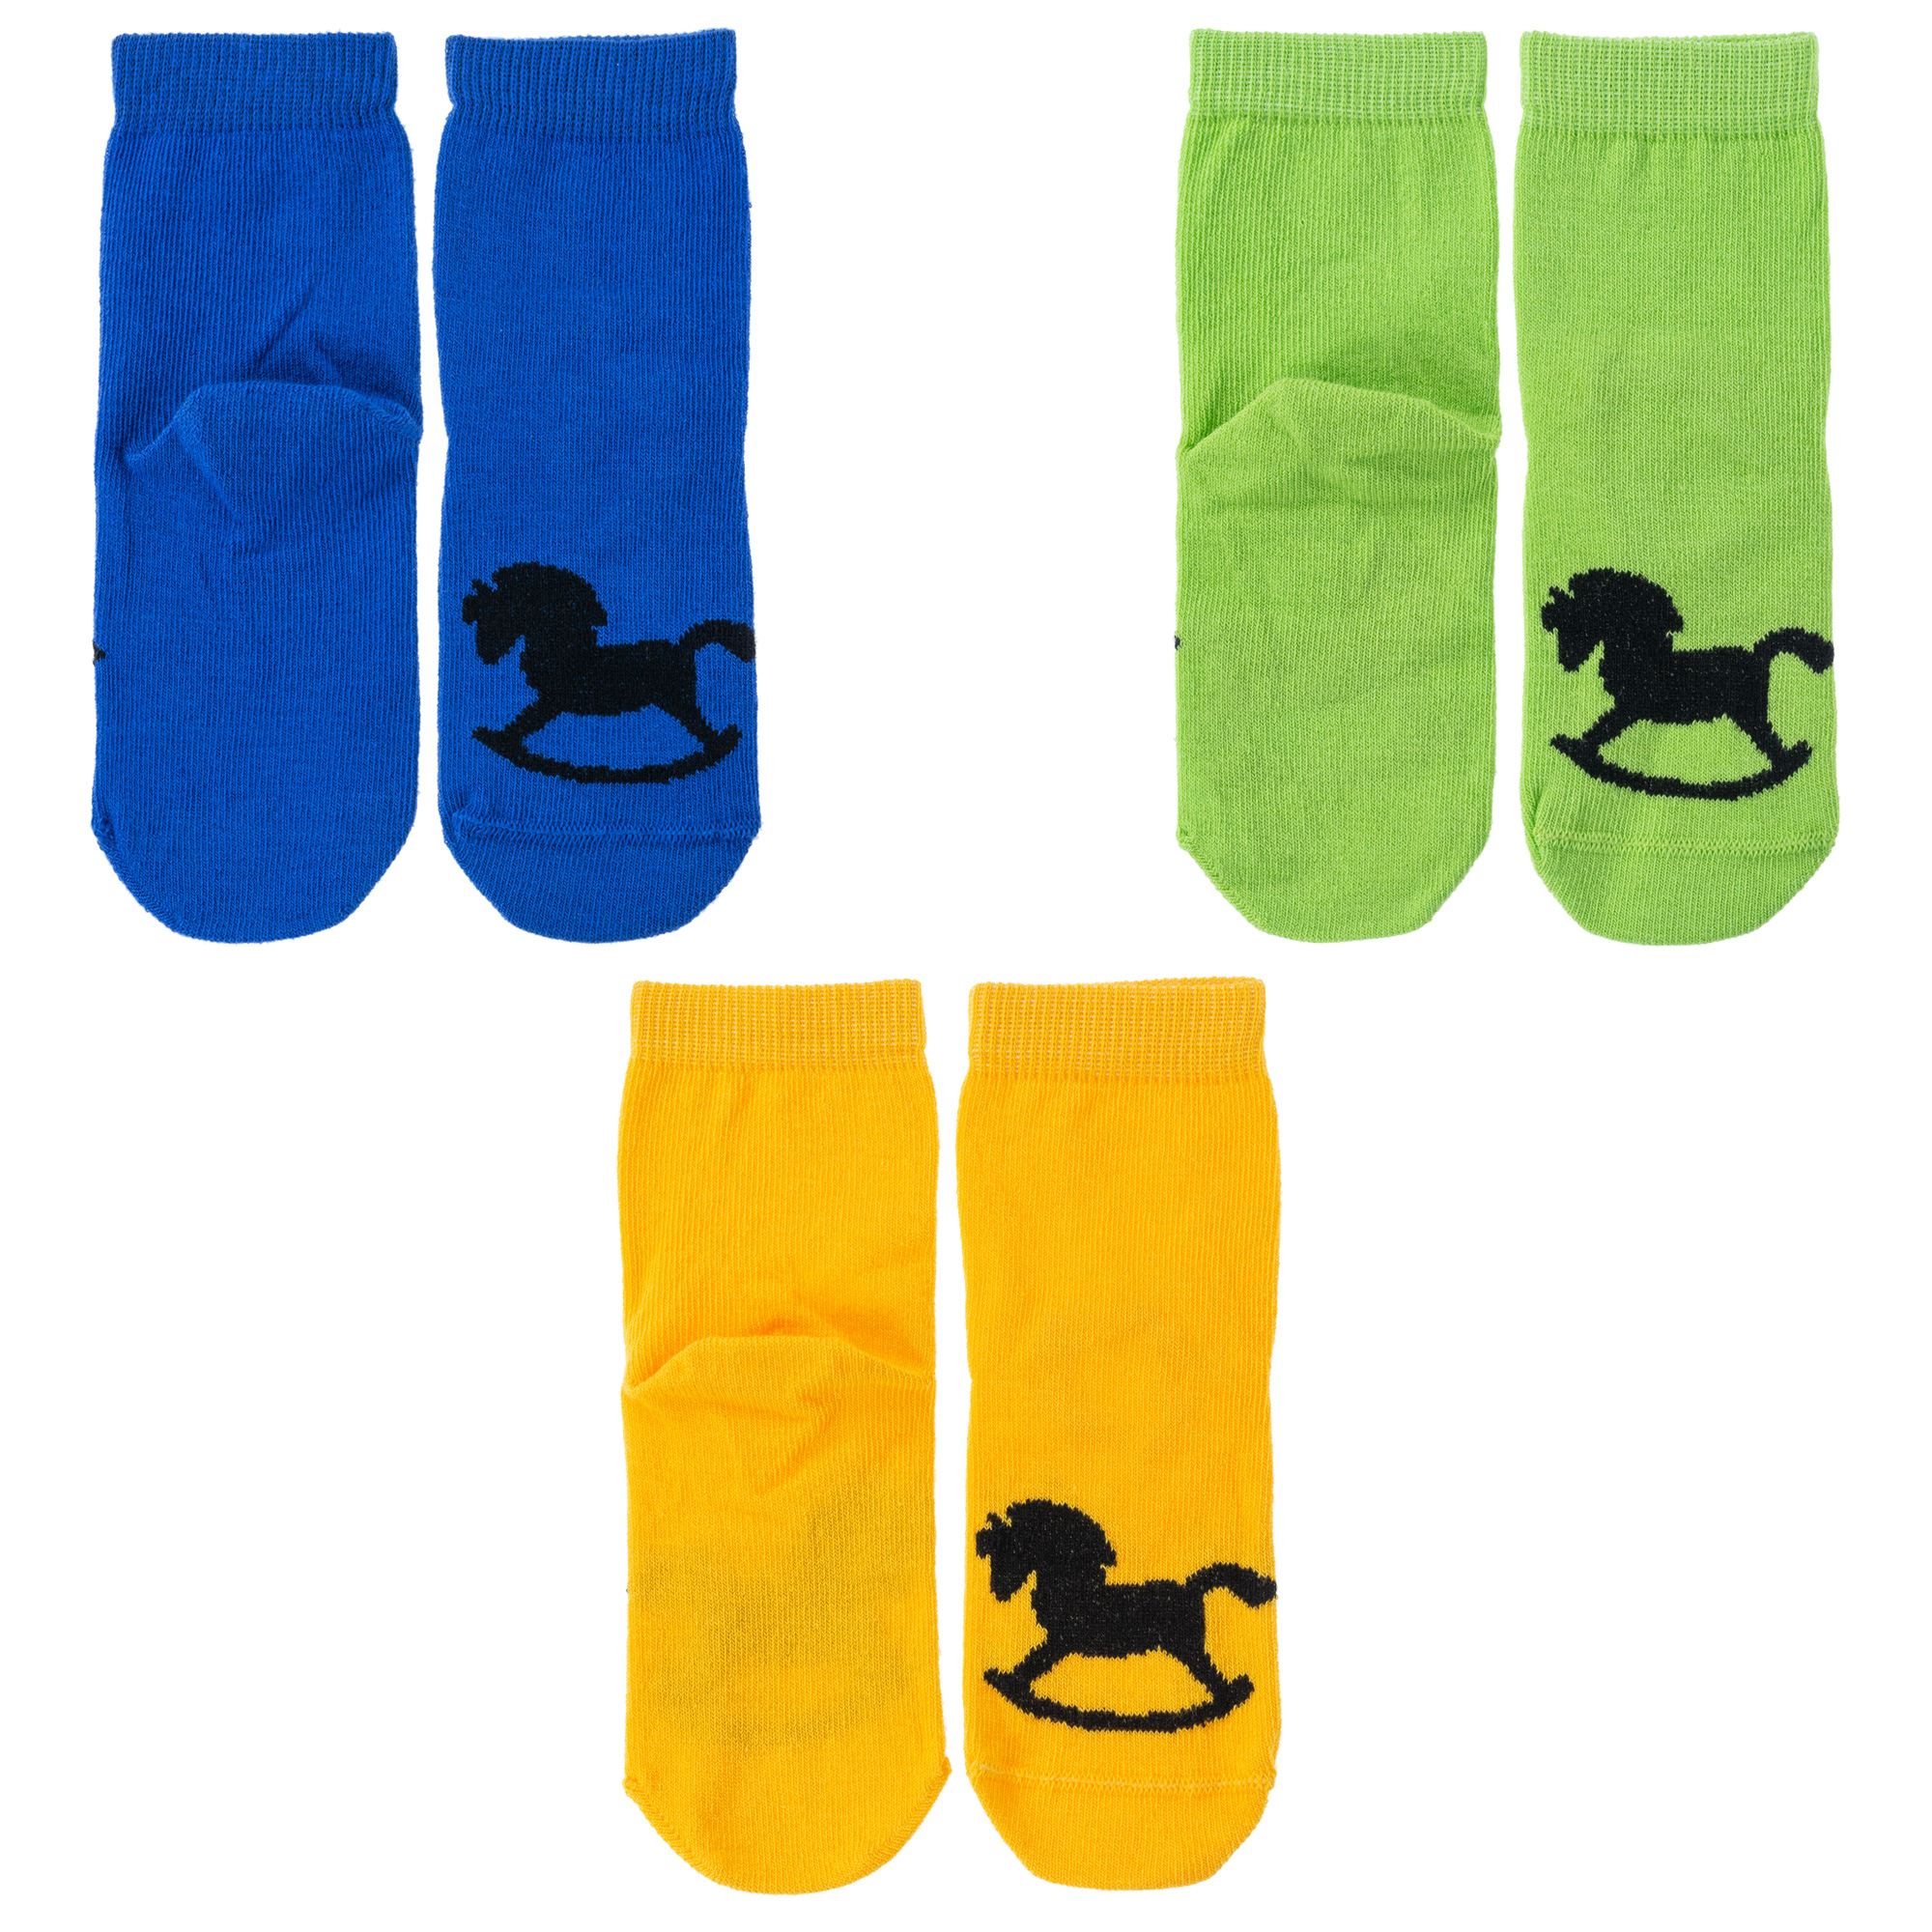 Носки детские Носкофф 3-НД1, синий; зеленый; желтый, 12-14 резиновые сапоги салатового а nordman детские